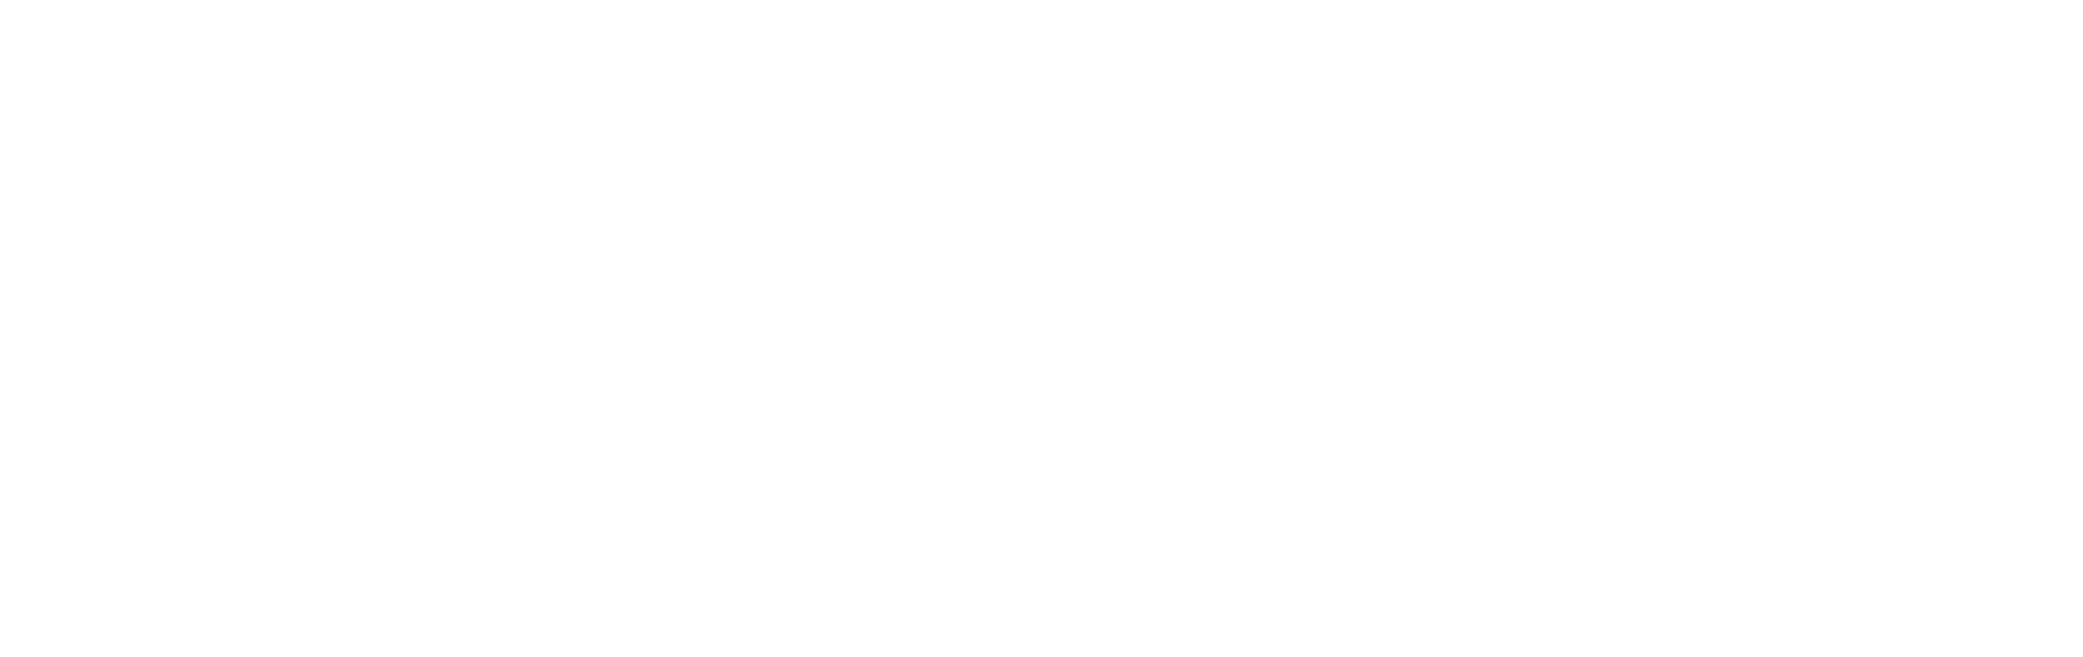 Northwest IMPACT white logo